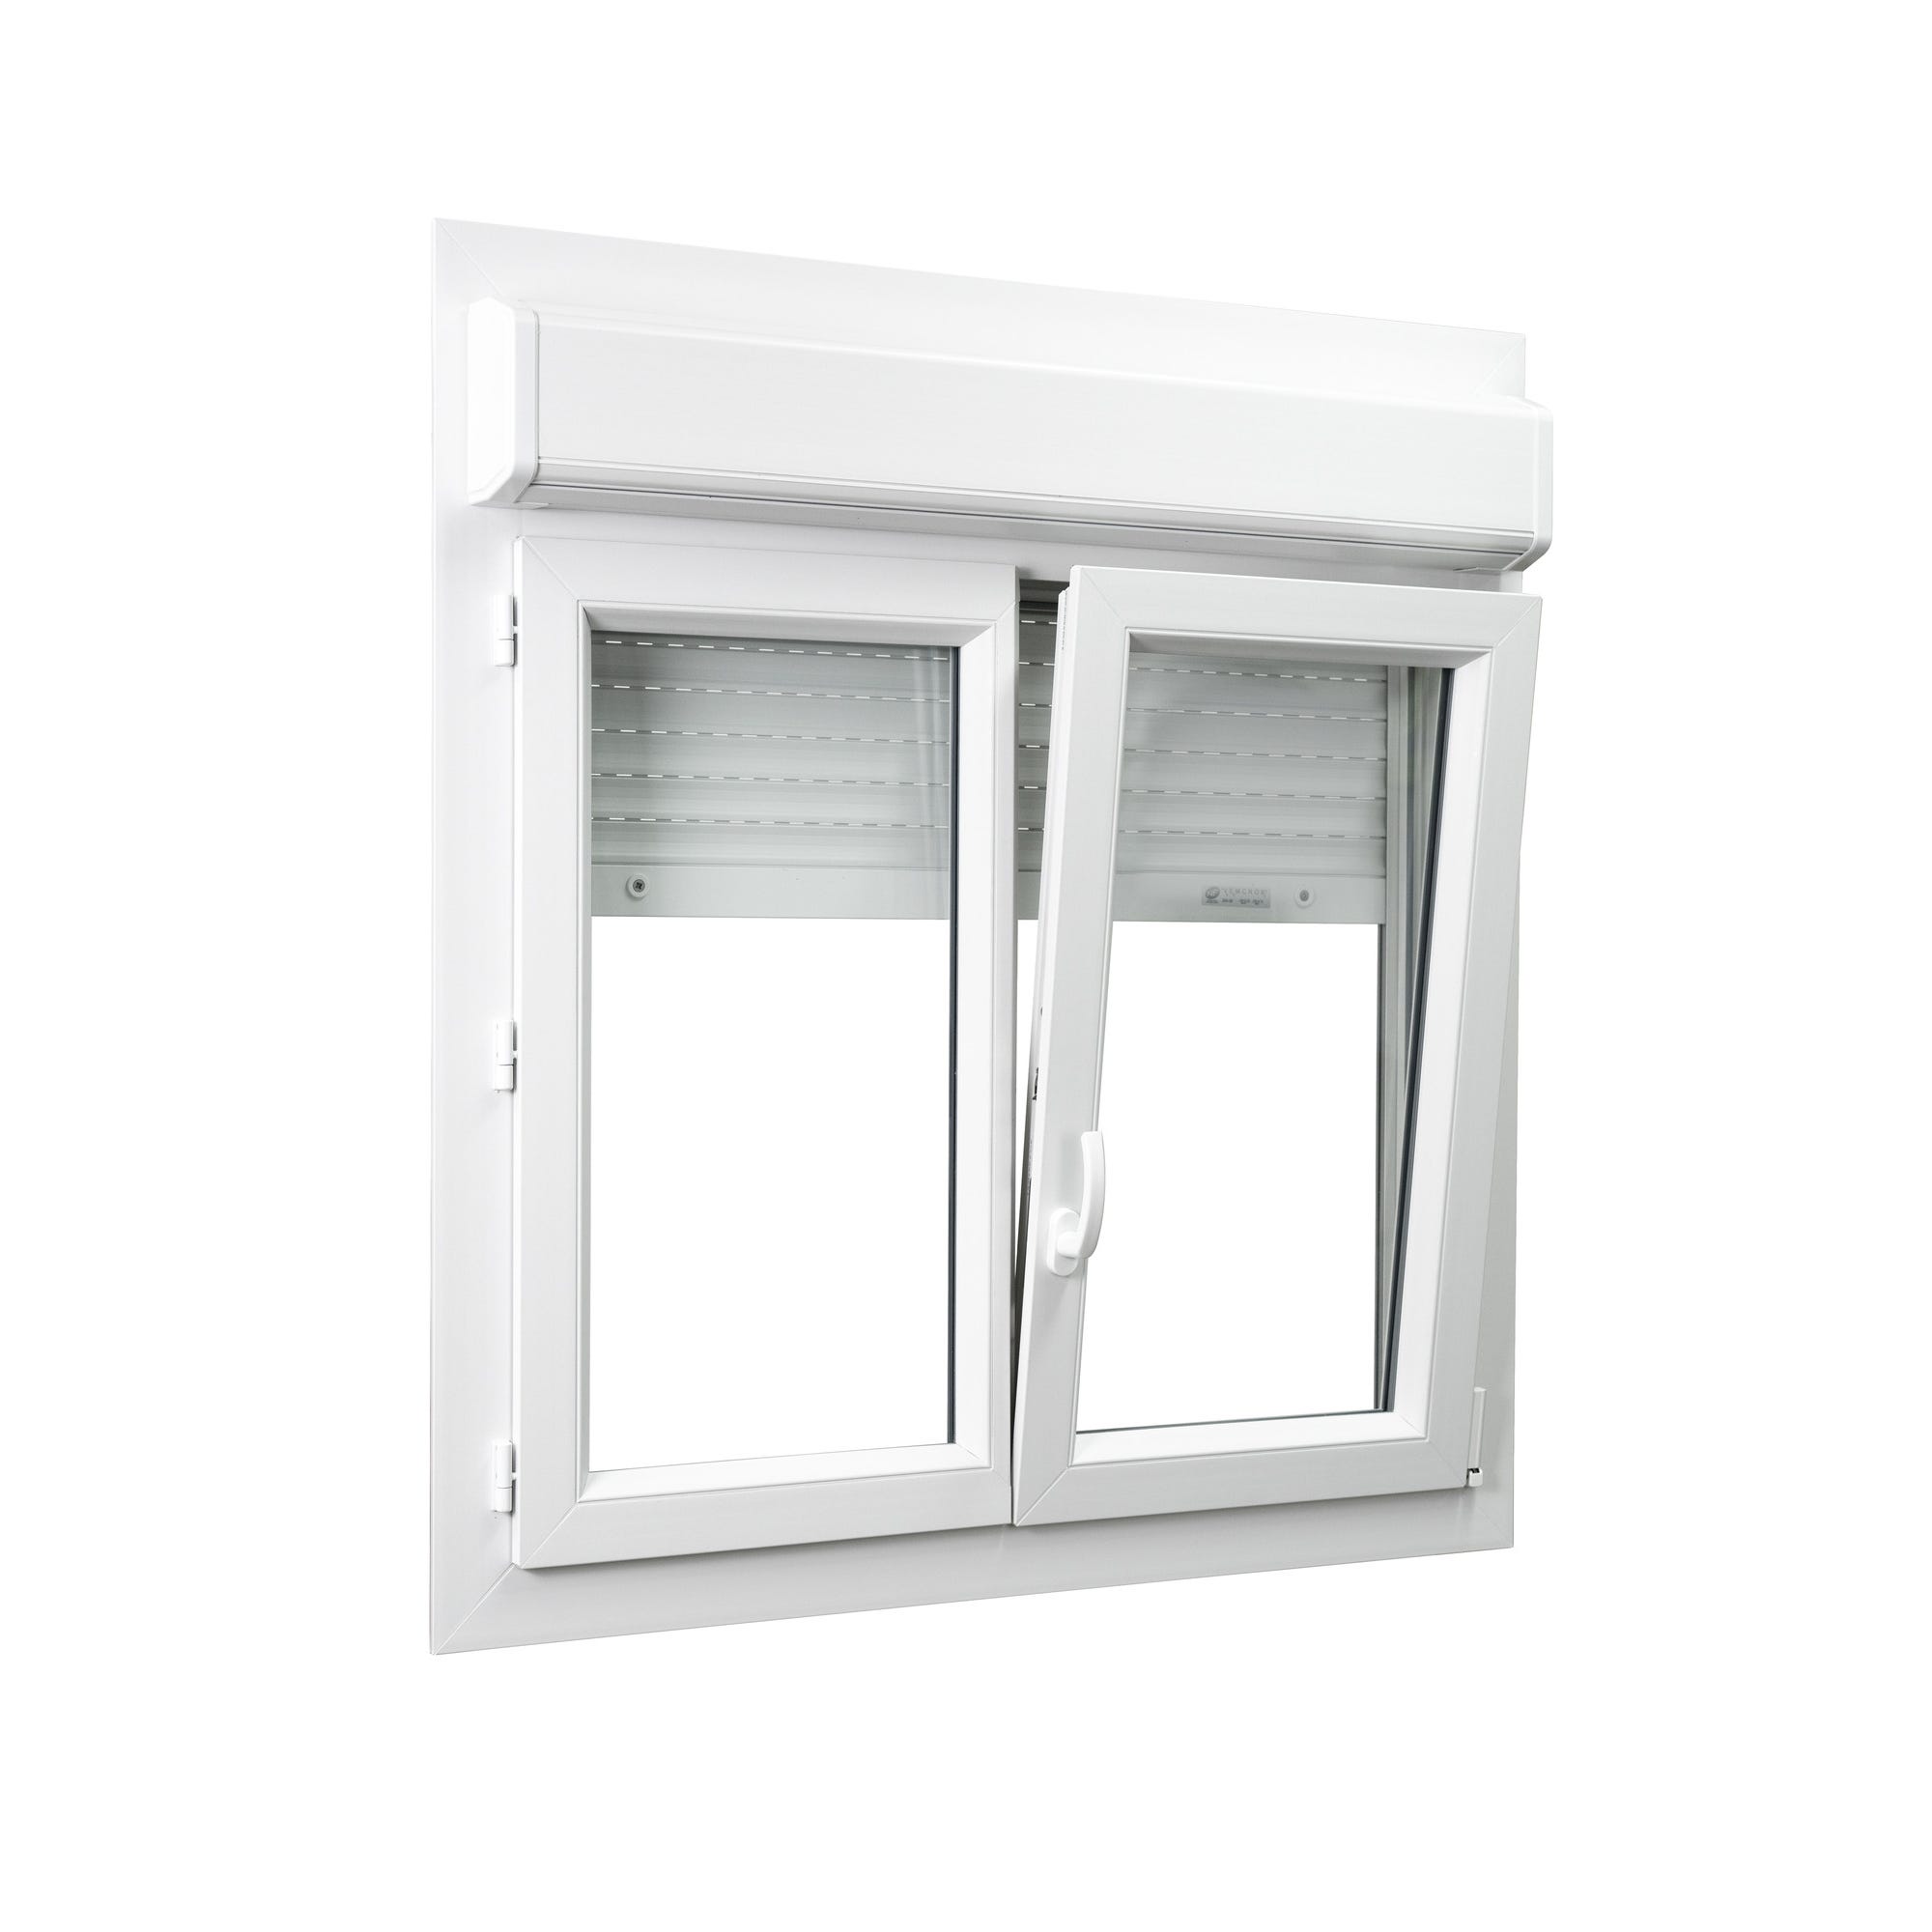 Fenêtre PVC 2 vantaux avec volet roulant intégré monobloc H.115 x l.100 cm - GROSFILLEX 1